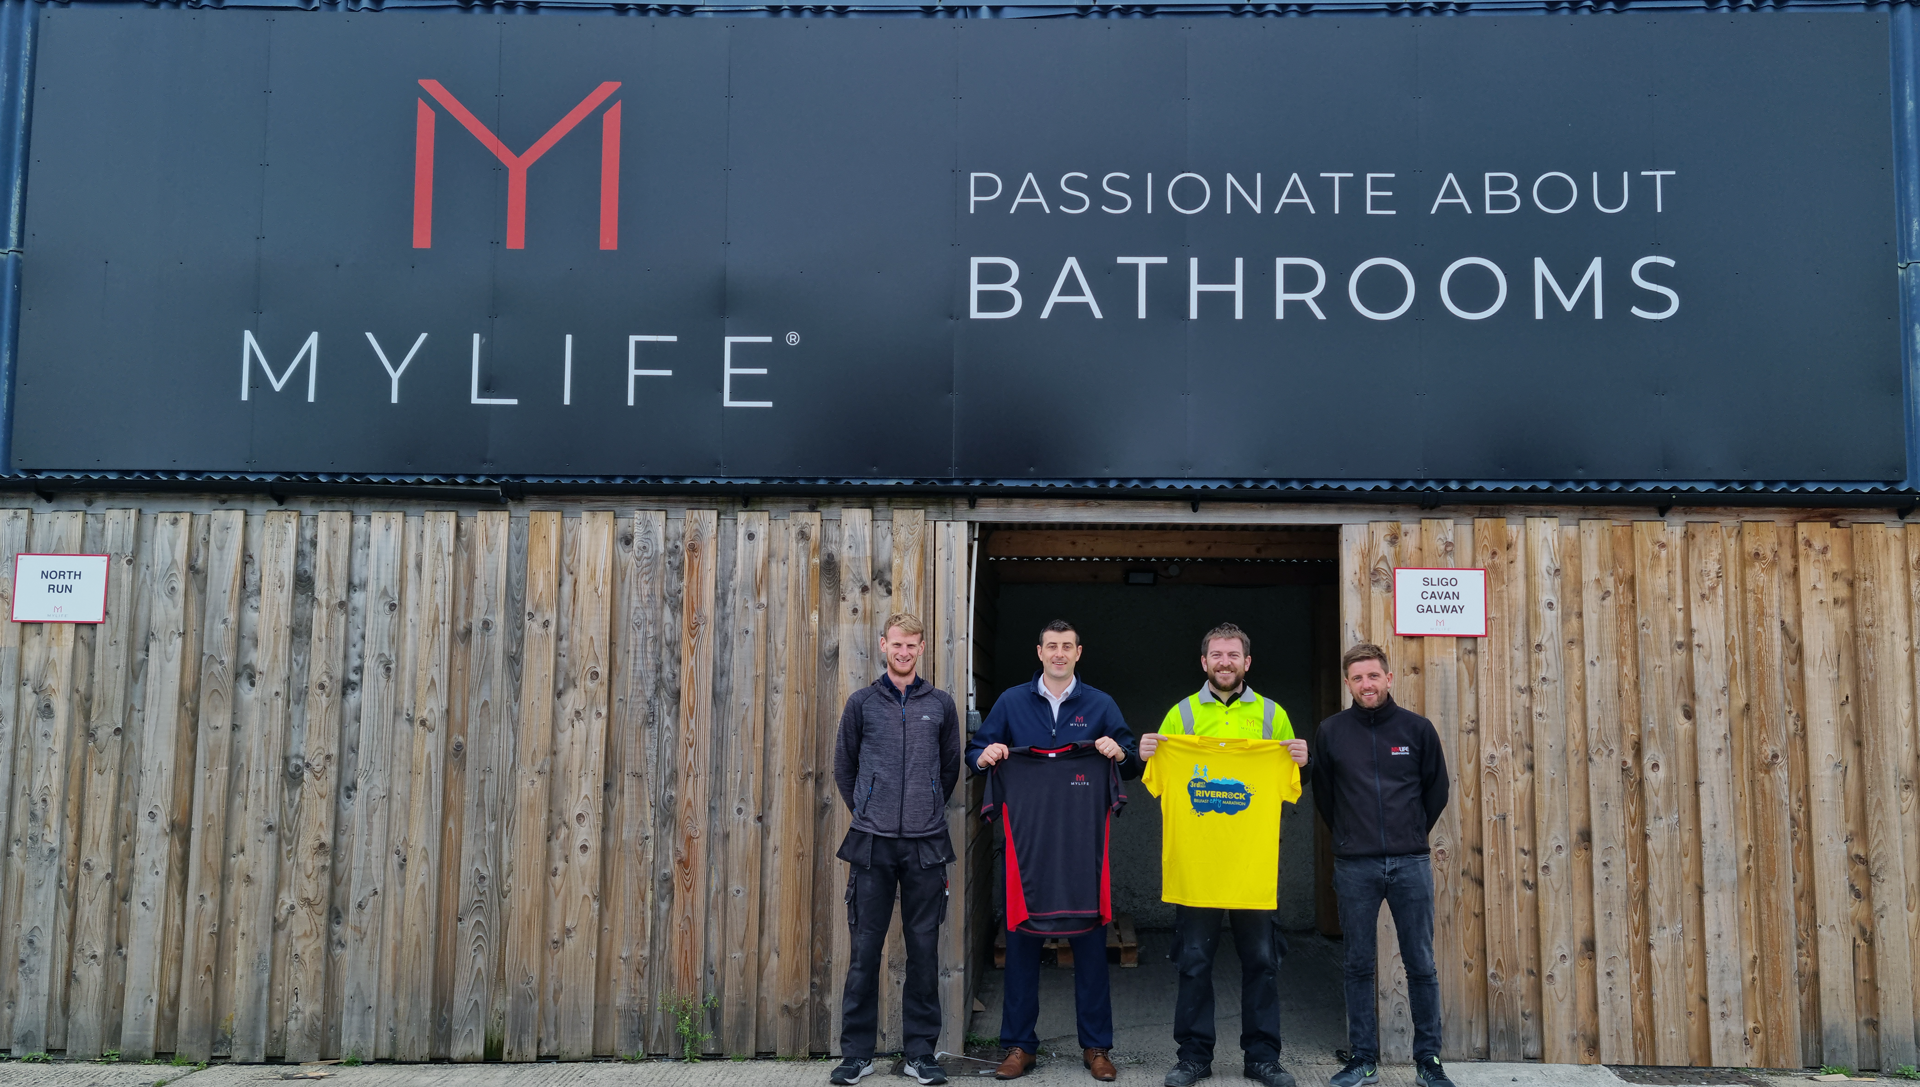 Team MyLife Enter Belfast Marathon